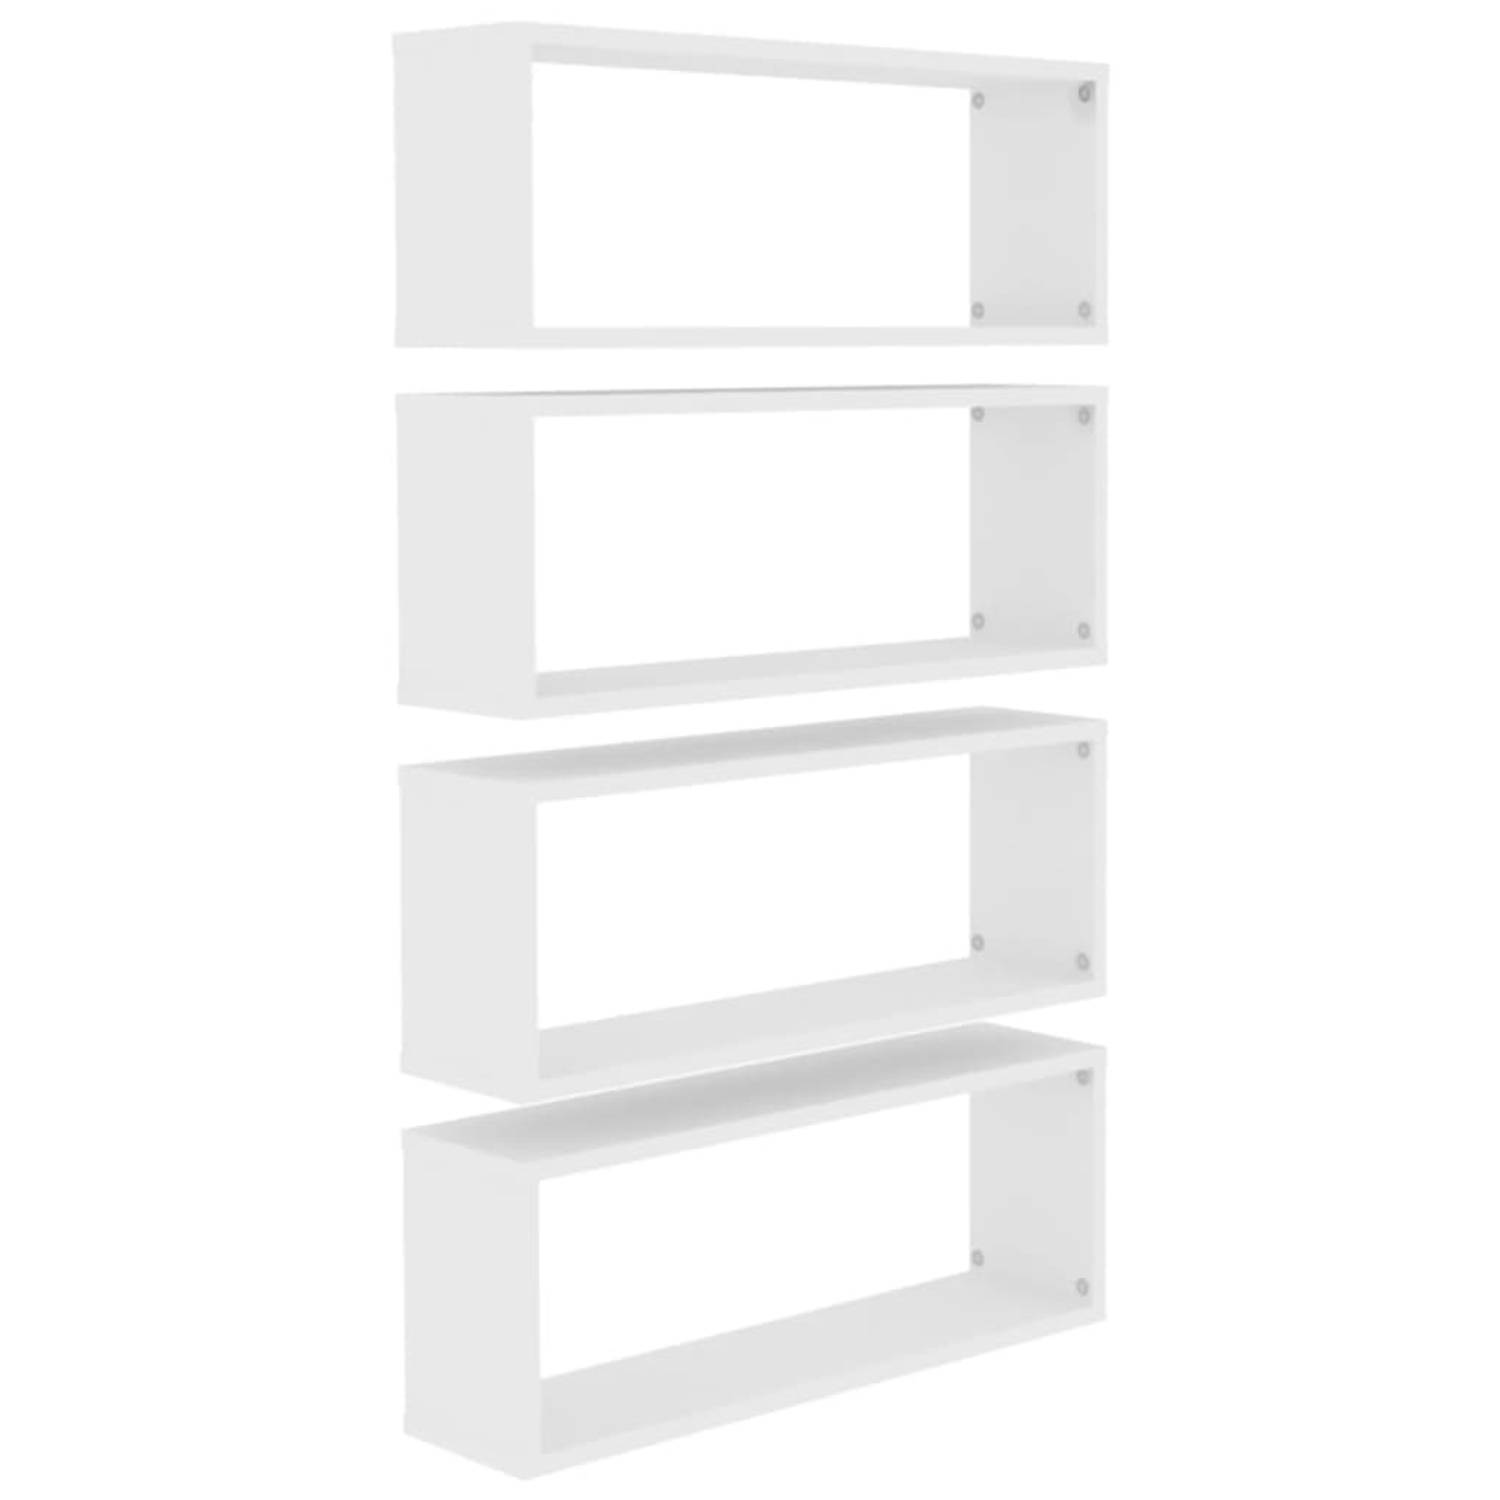 The Living Store Wandplanken - set van 4 - Vakkenkasten van wit spaanplaat - Afmetingen- 60x15x23 cm - Eenvoudig te installeren - Stijlvolle opbergruimte